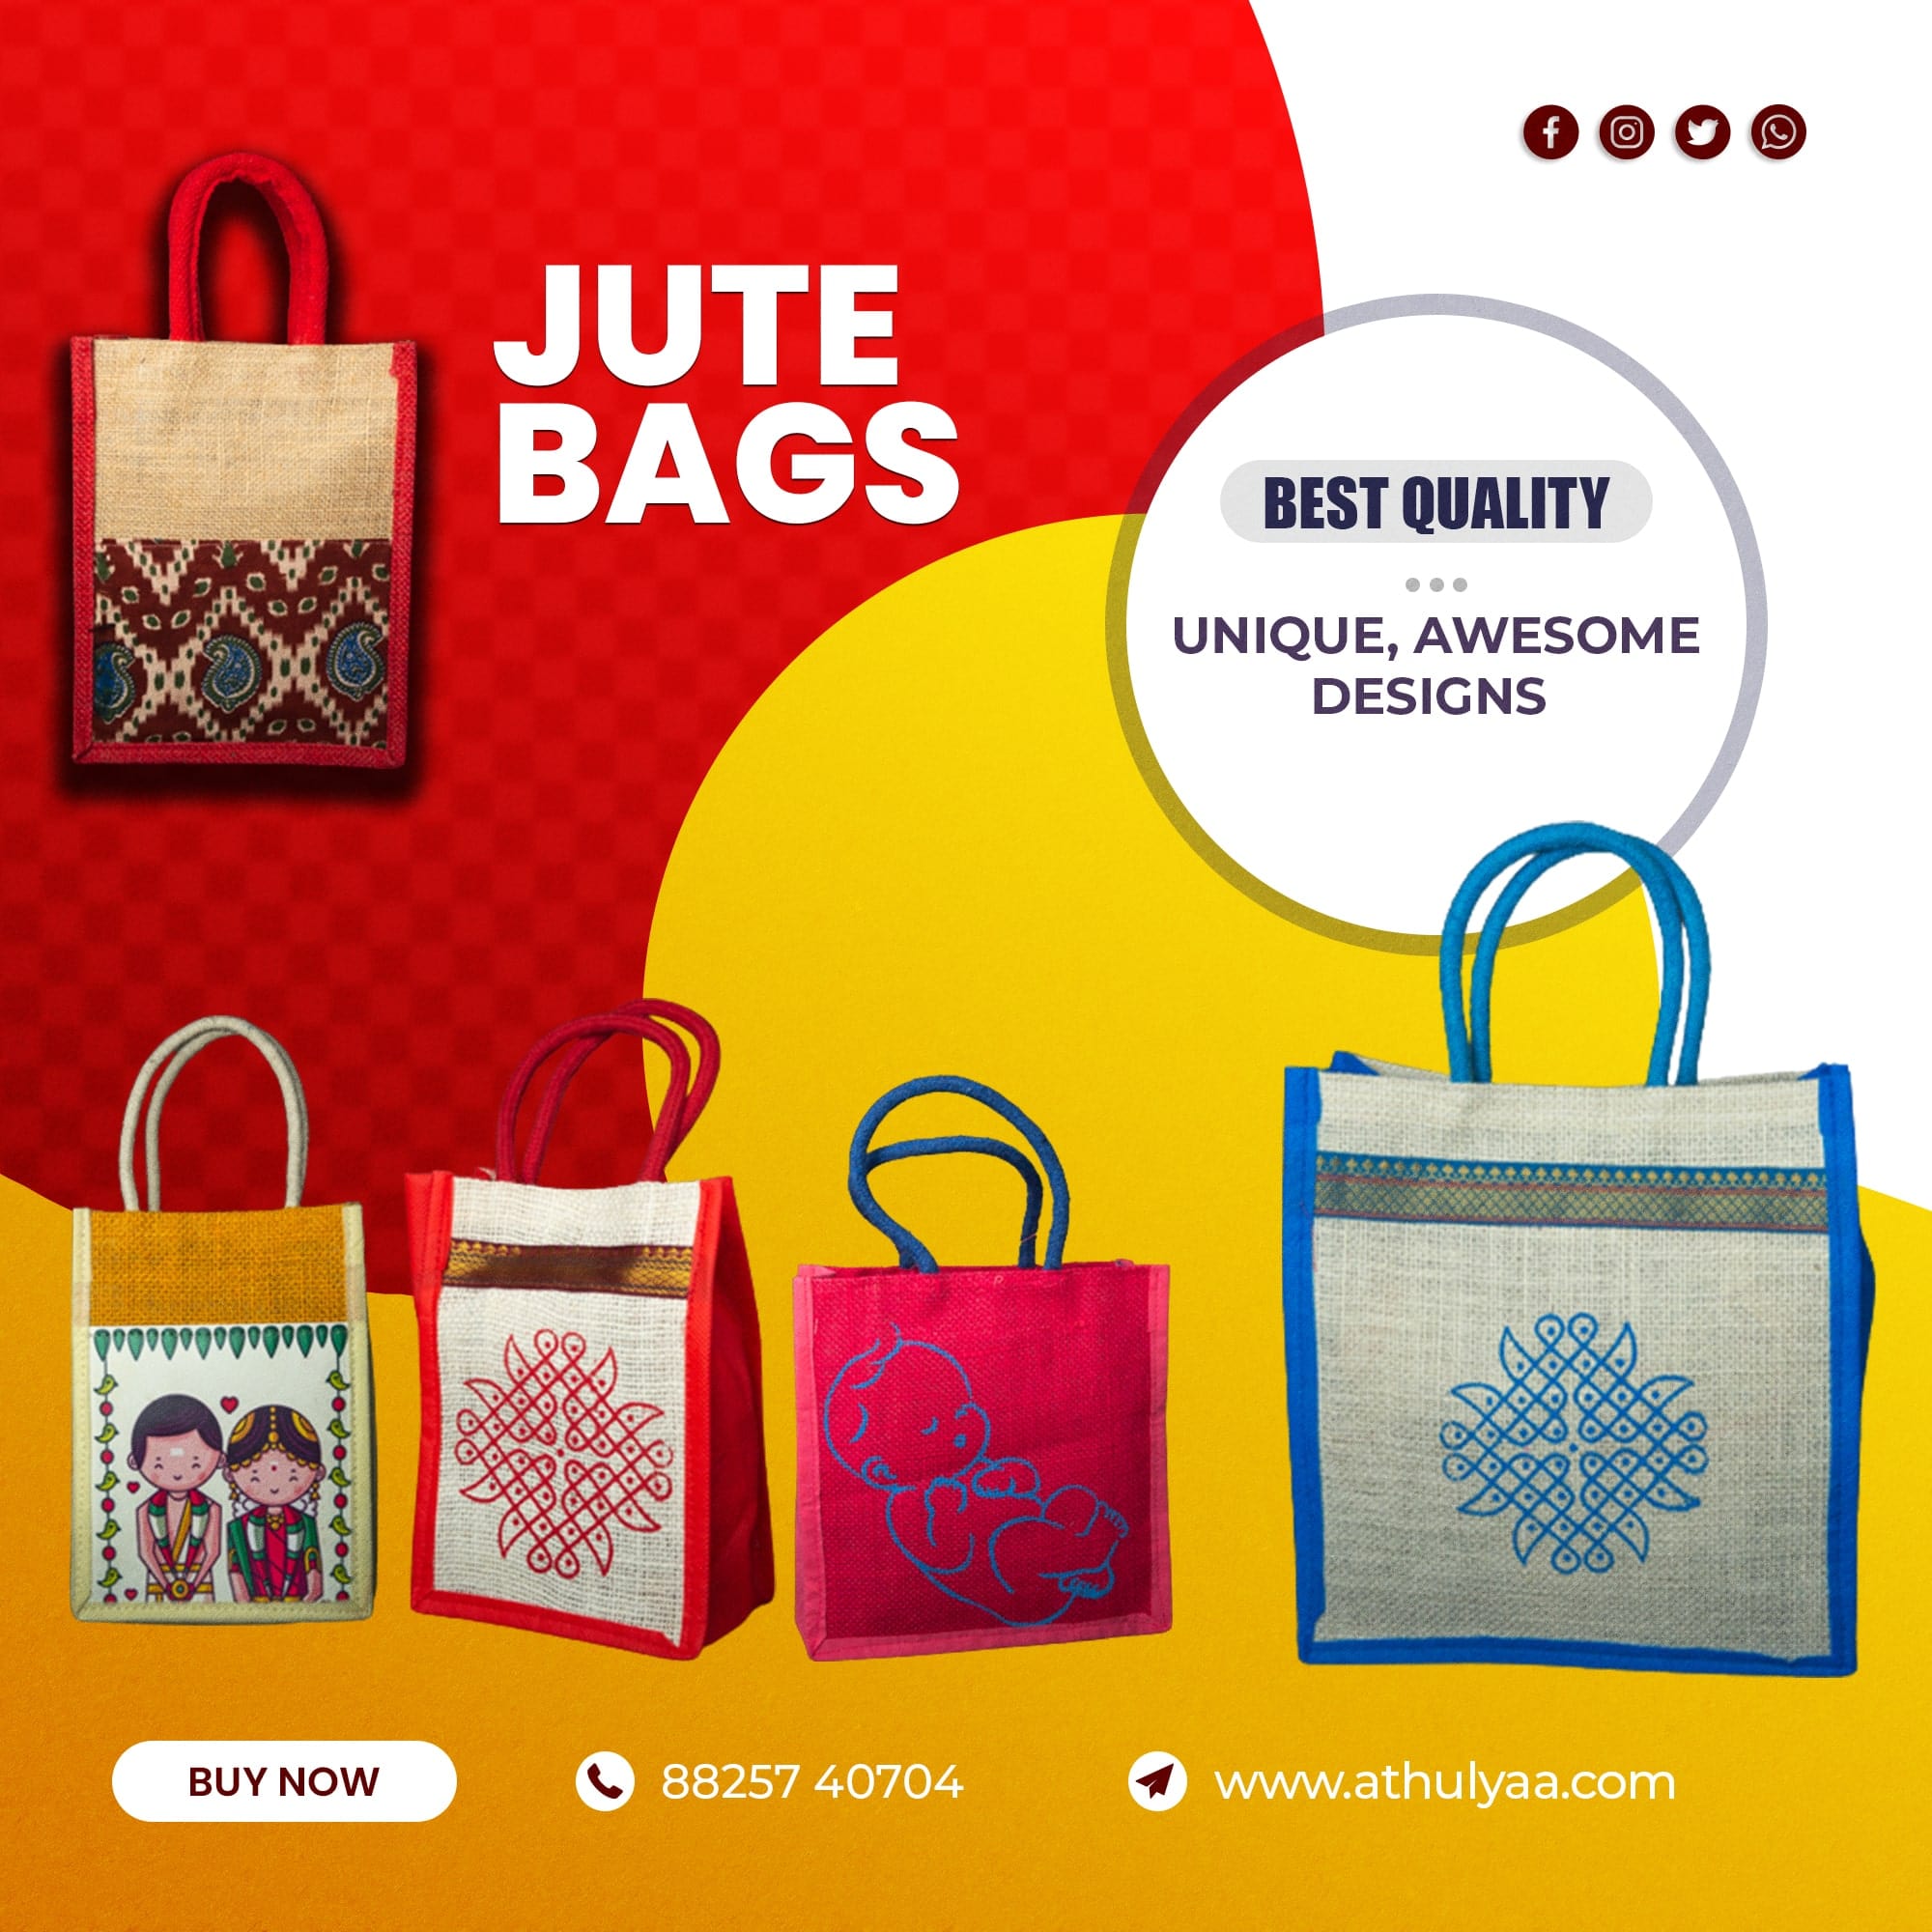 Return Gift Bags for Wedding | Athulyaa